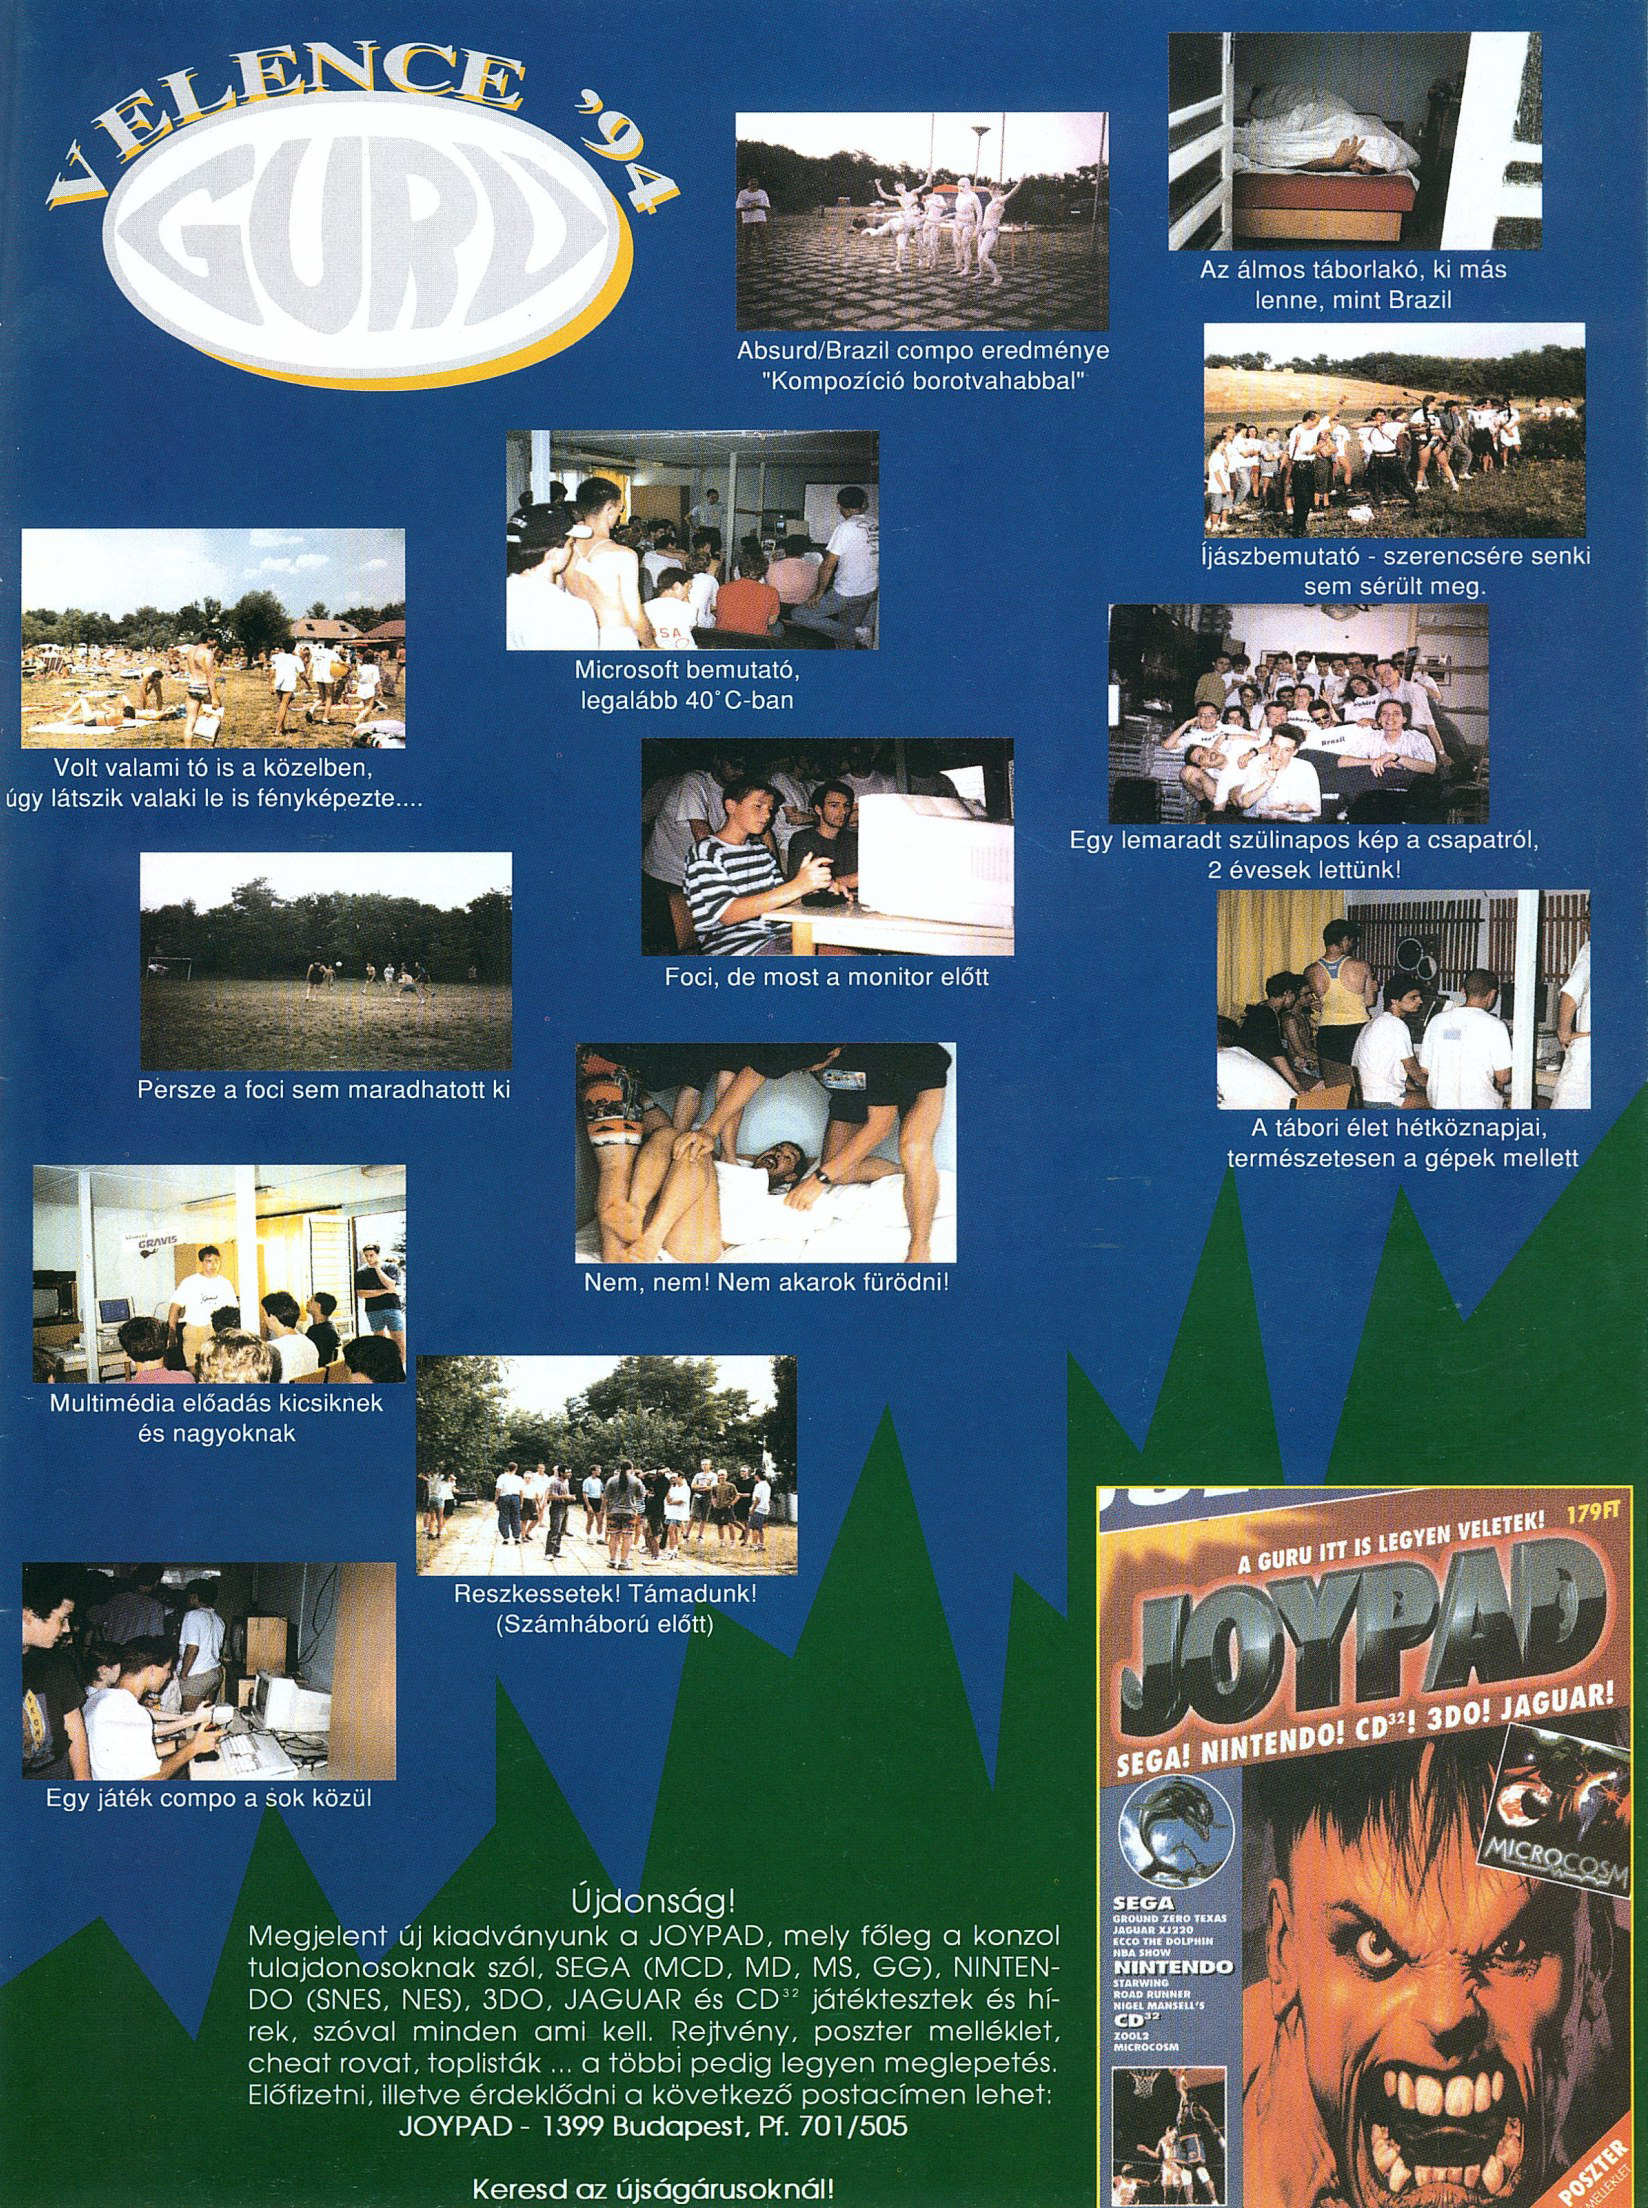 Guru 1994-08 HU Joypad advert.png